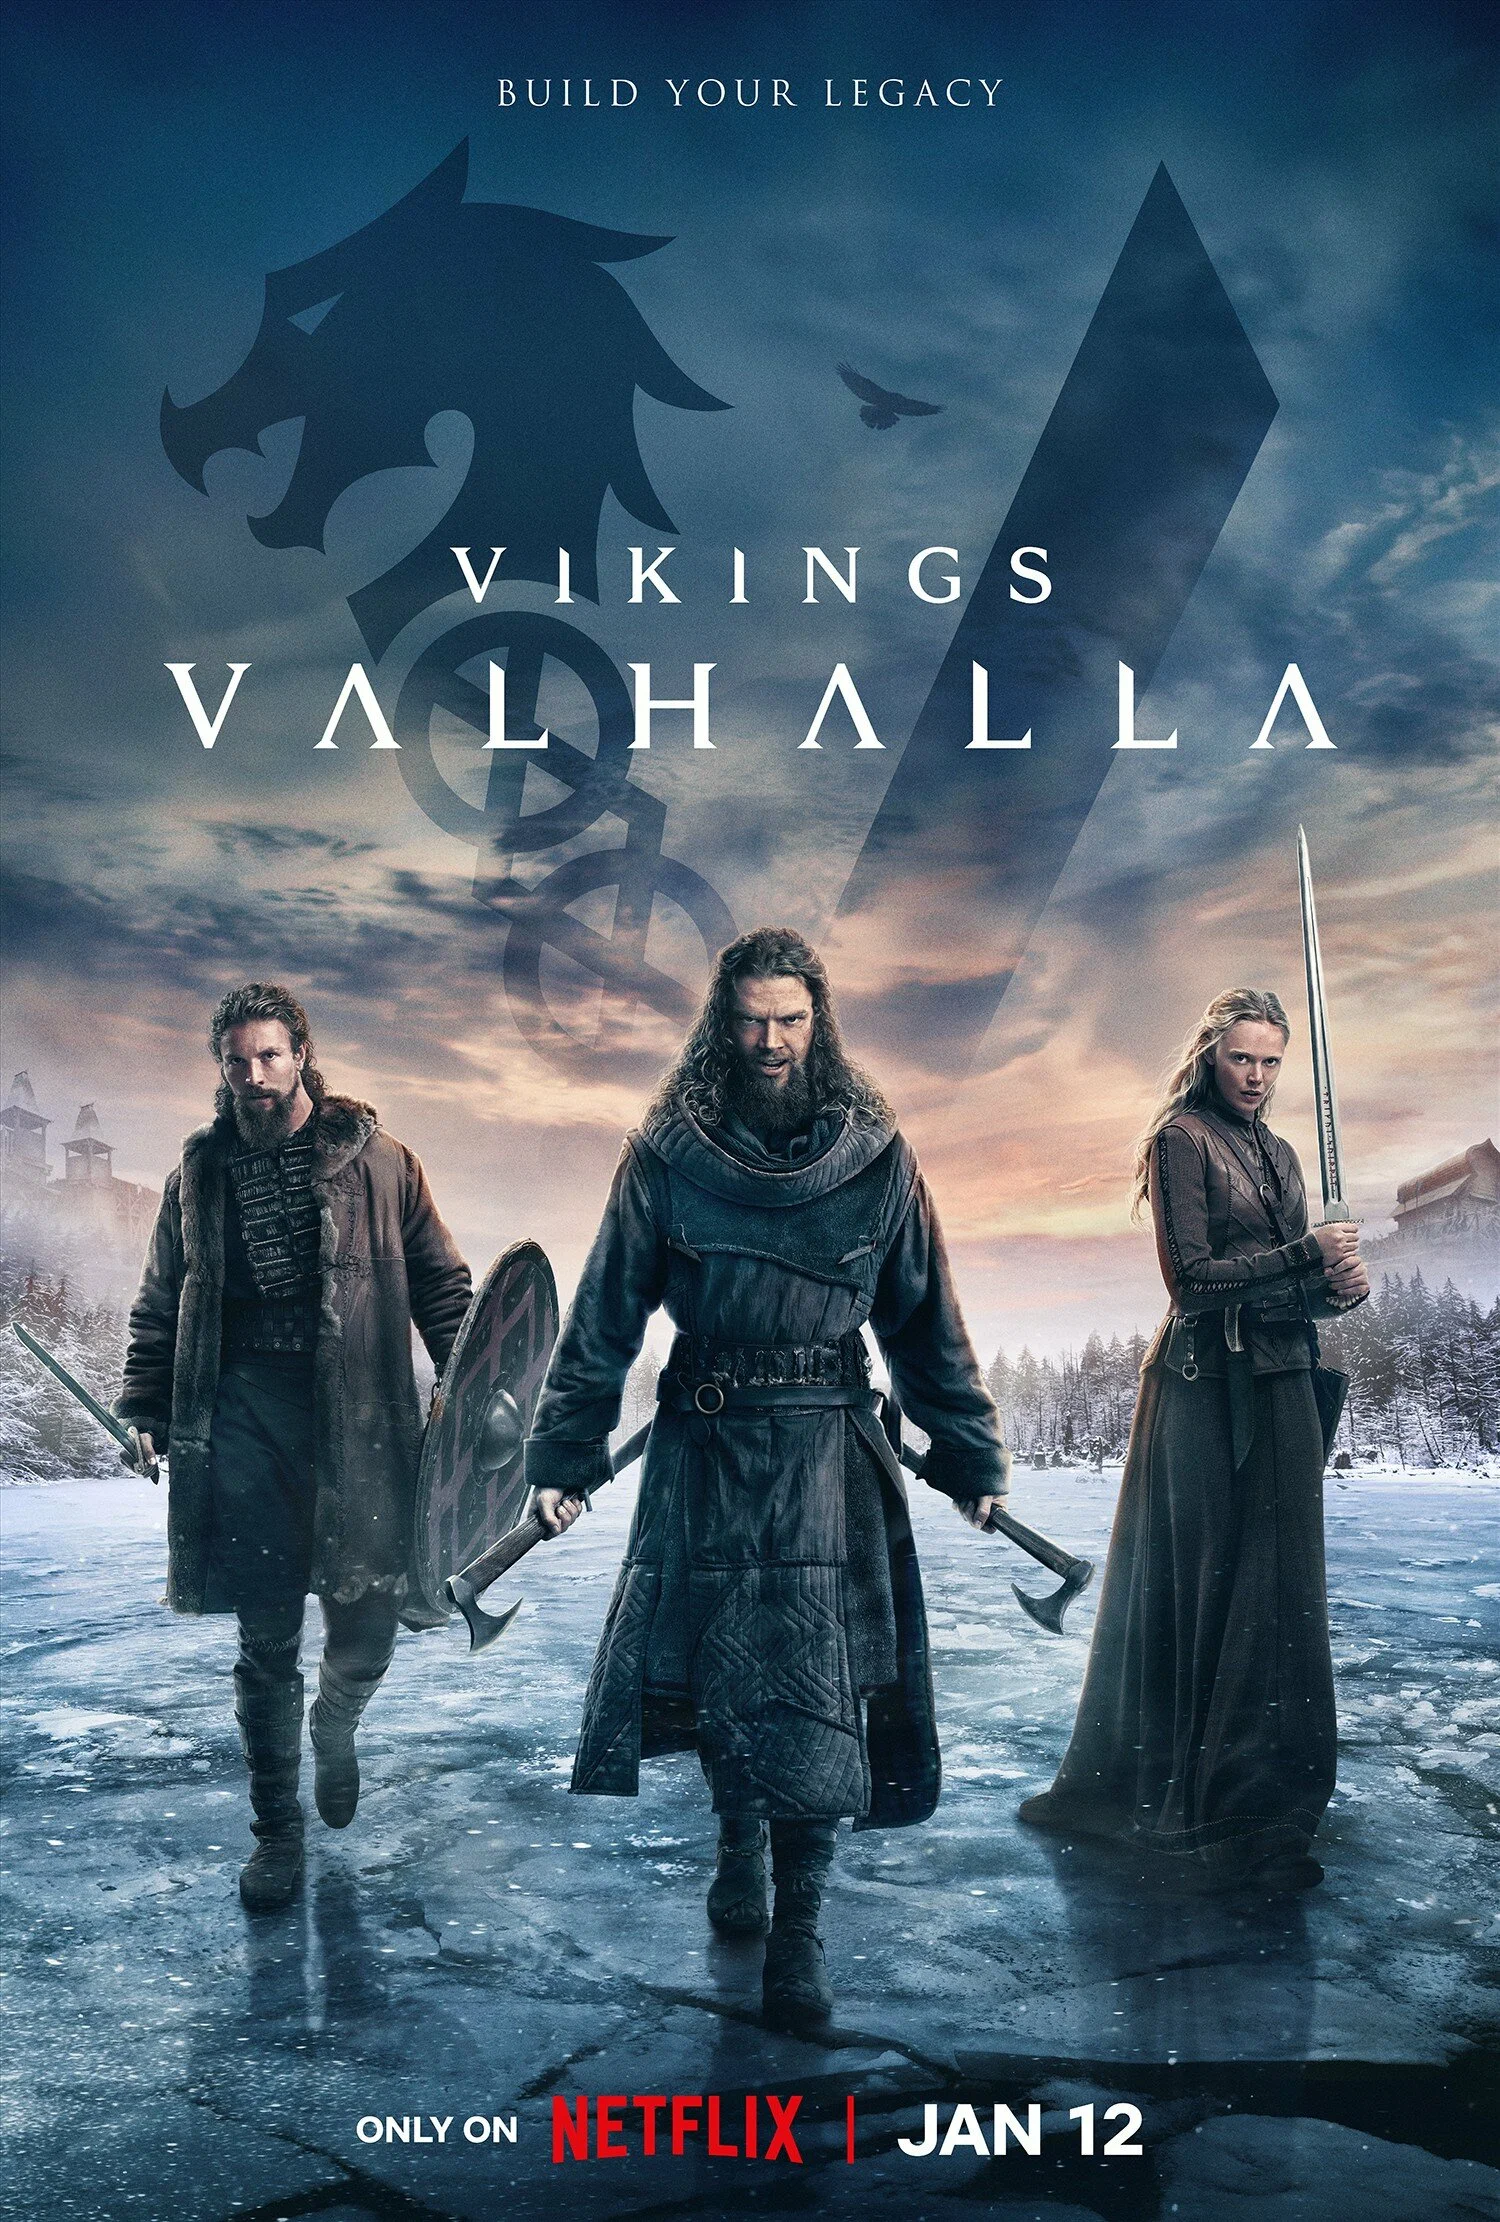 Викинги: Вальхалла 2 сезон смотреть онлайн